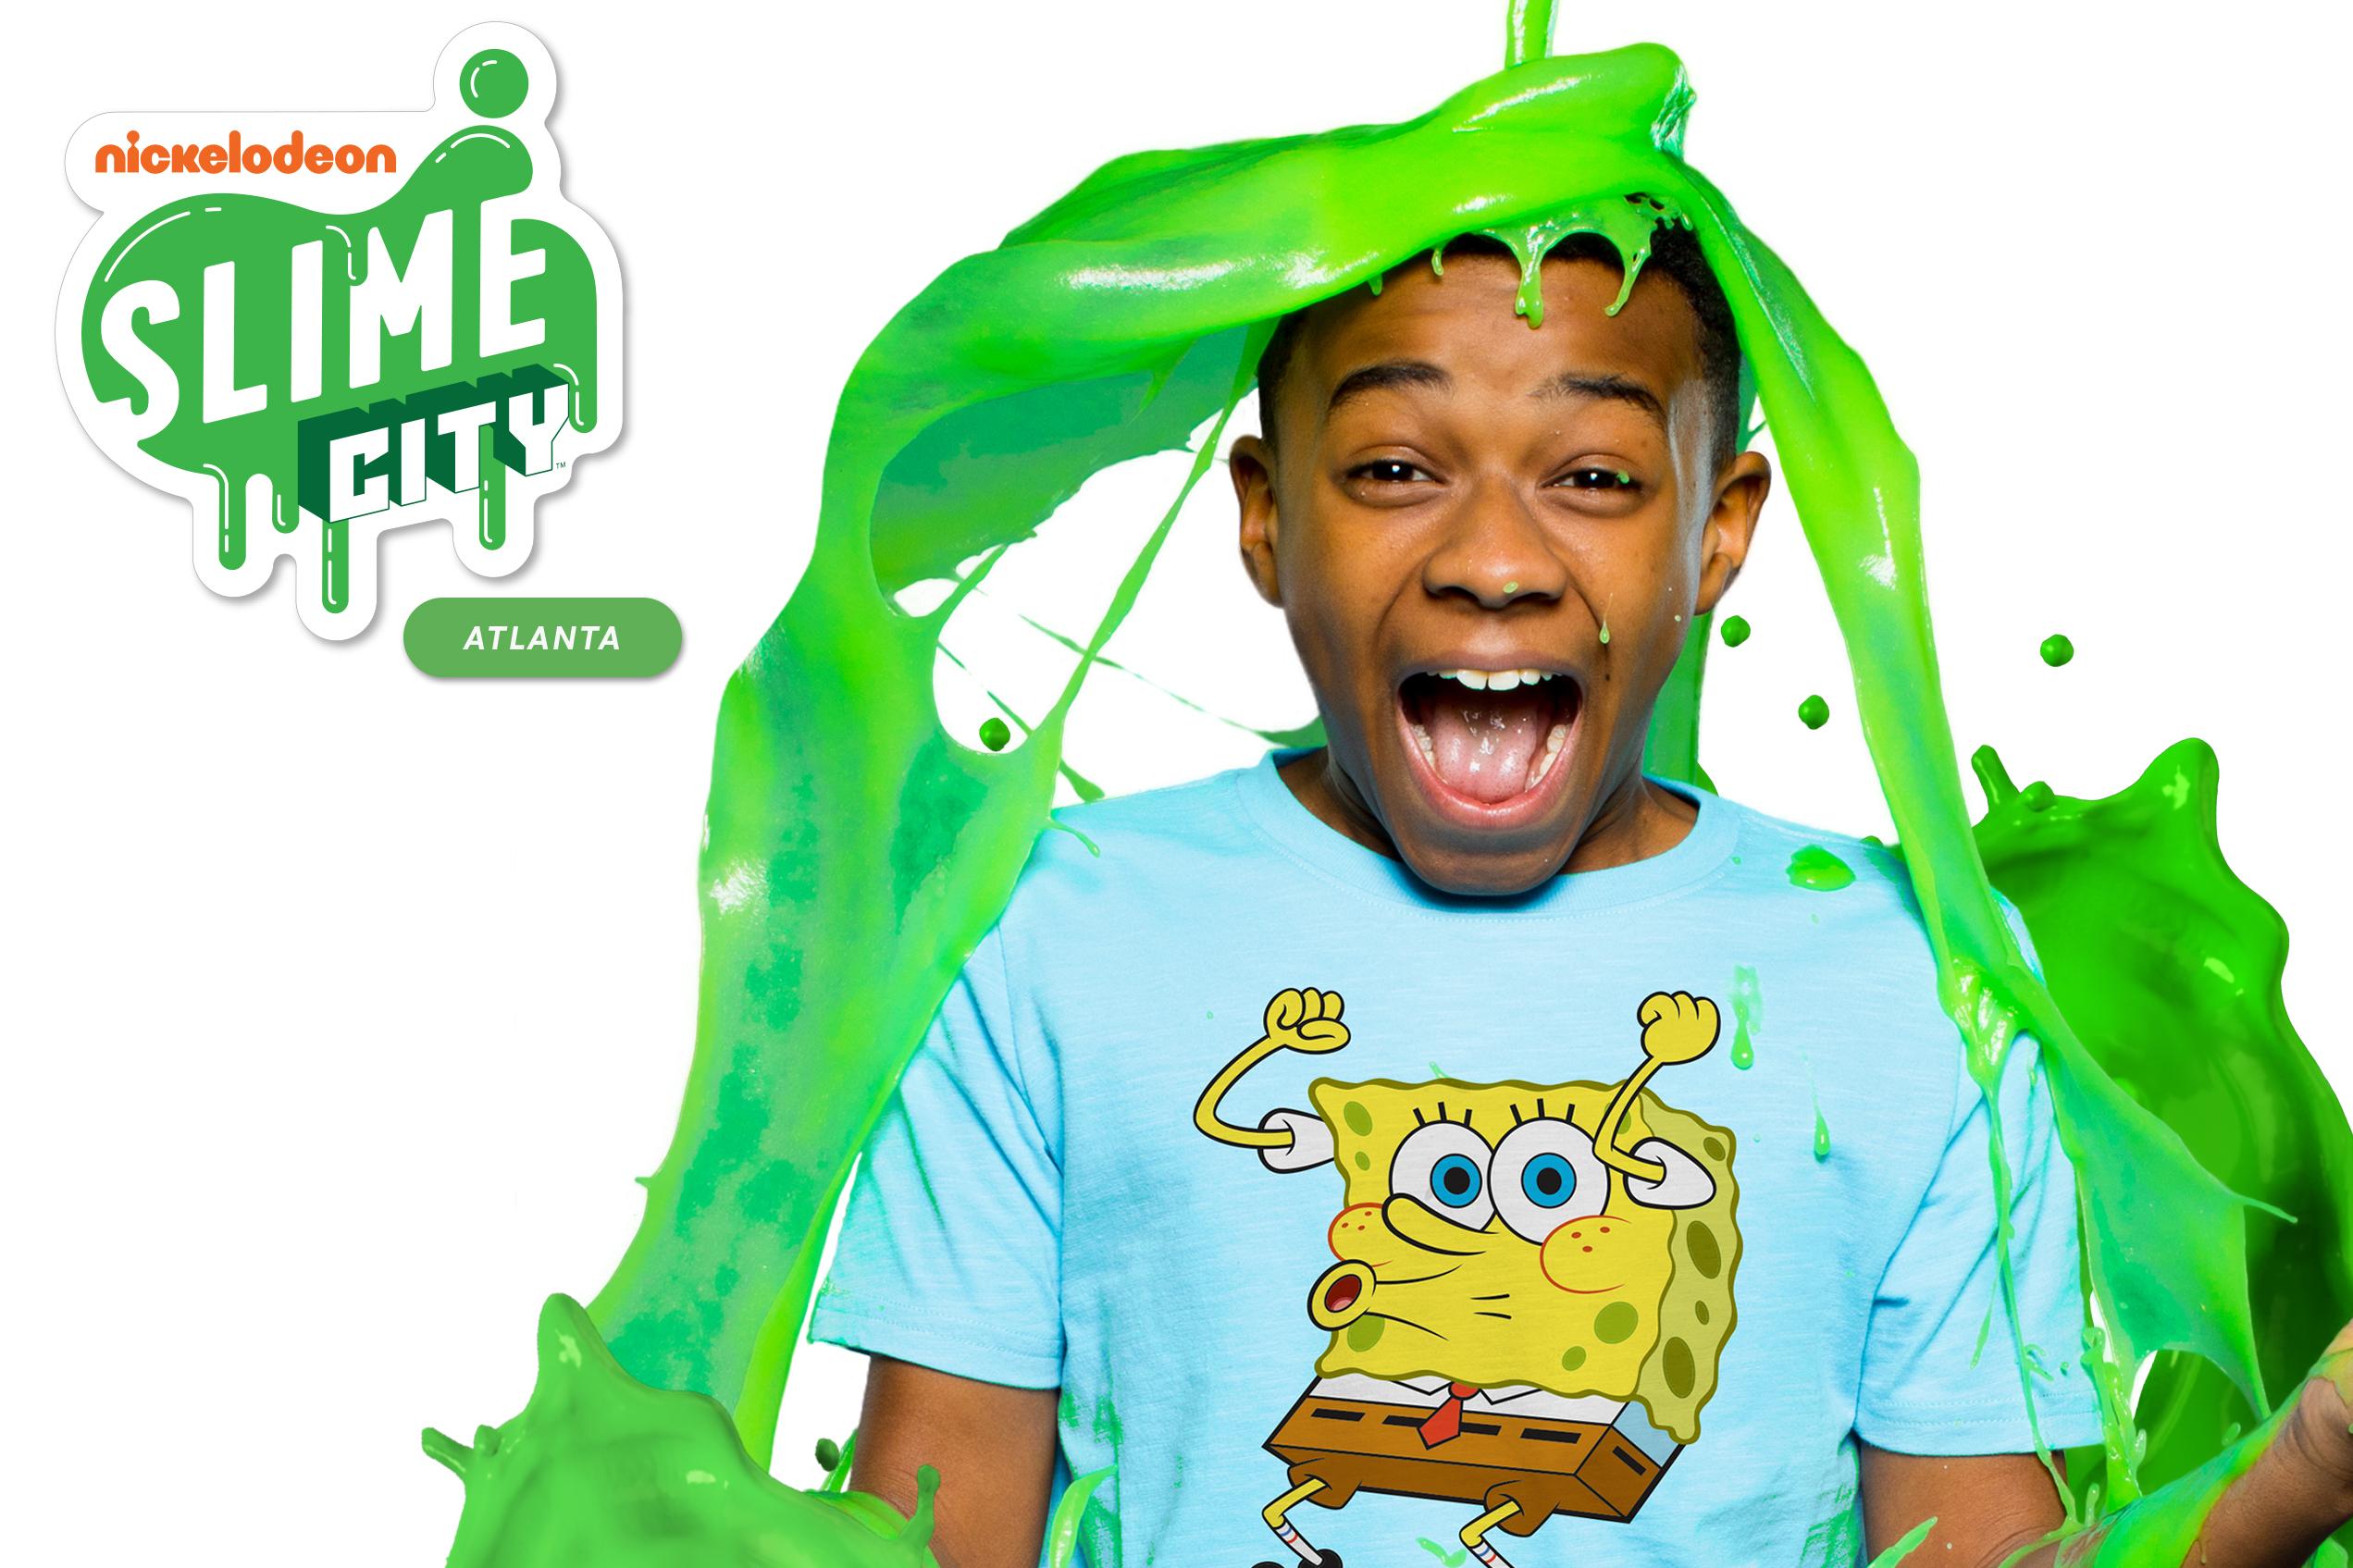 Nickelodeon’s Slime Fest is in Atlanta